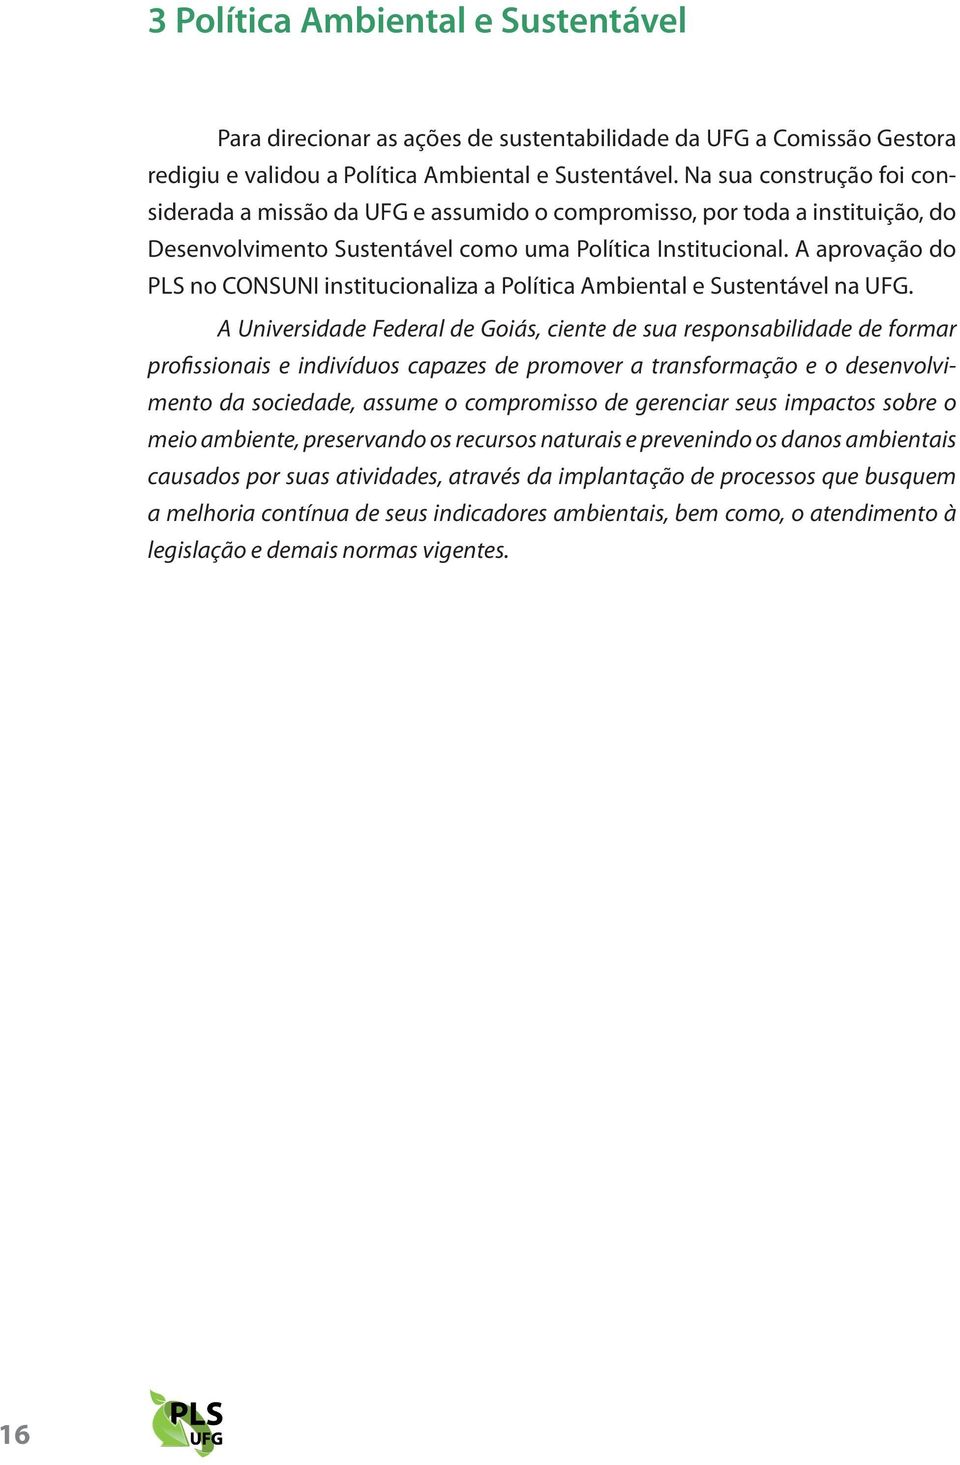 a aprovação do Pls no ConsU institucionaliza a Política ambiental e sustentável na UFG.